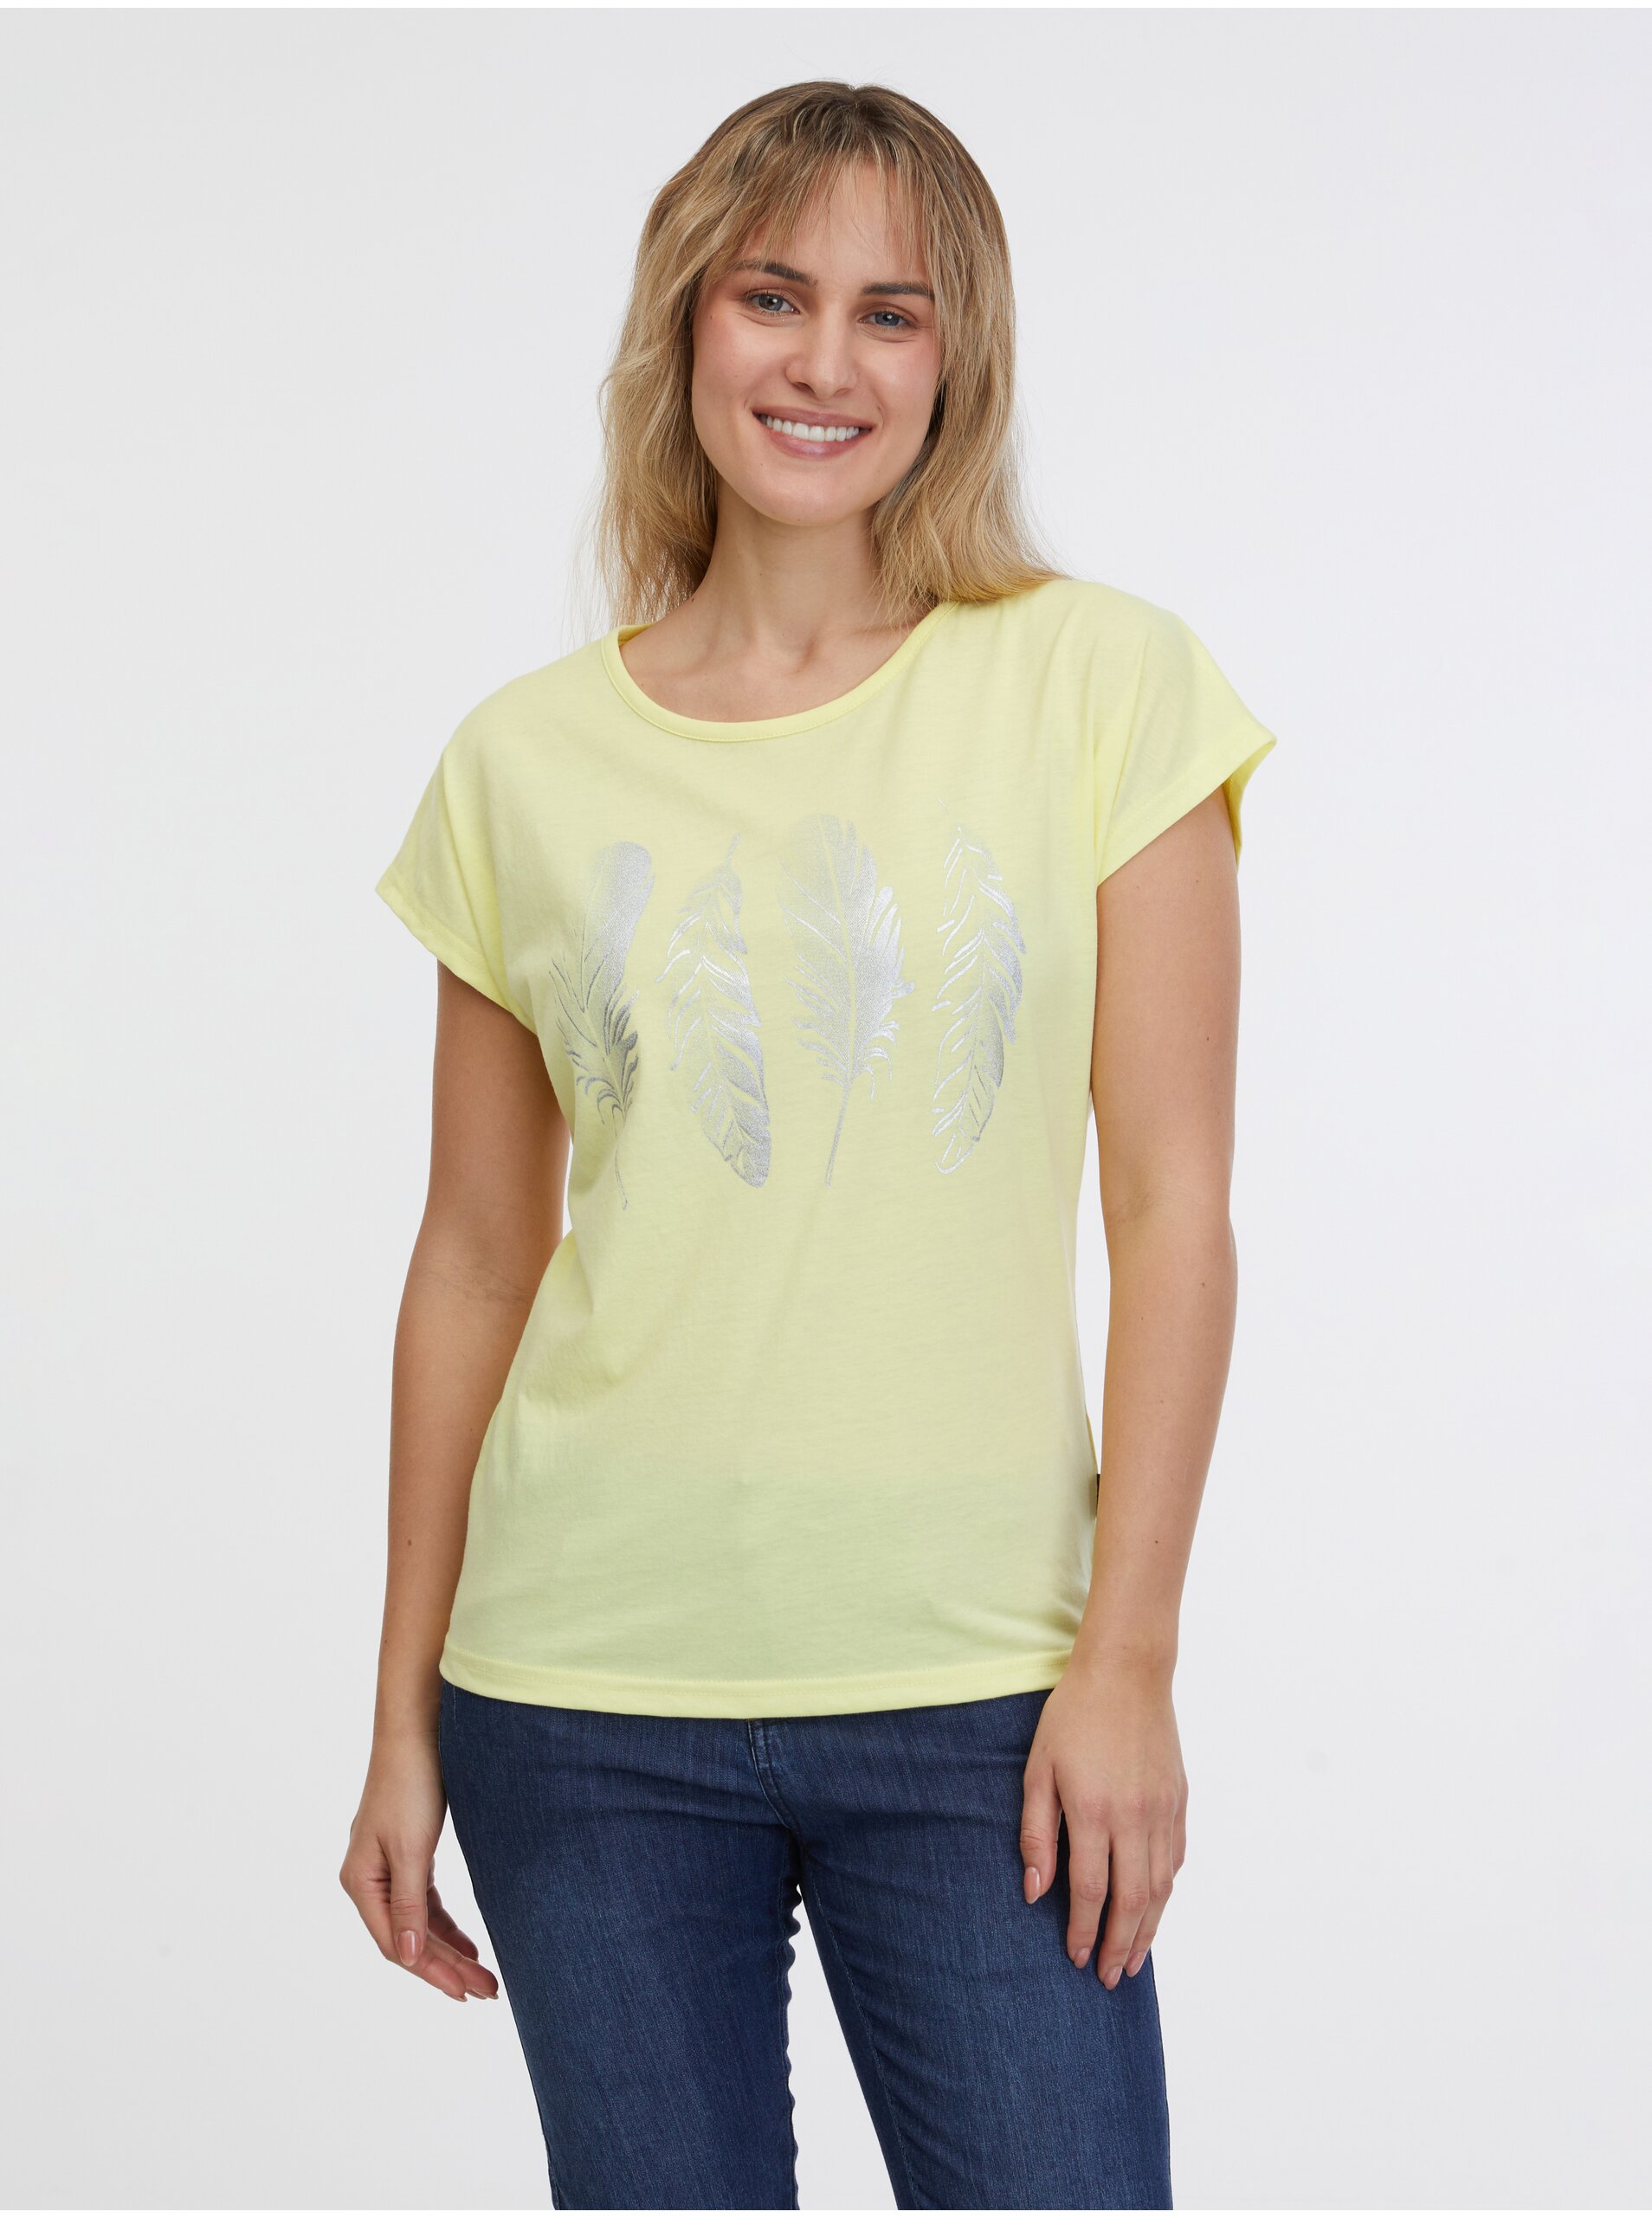 Lacno Svetlo žlté dámske tričko SAM 73 Clorinda